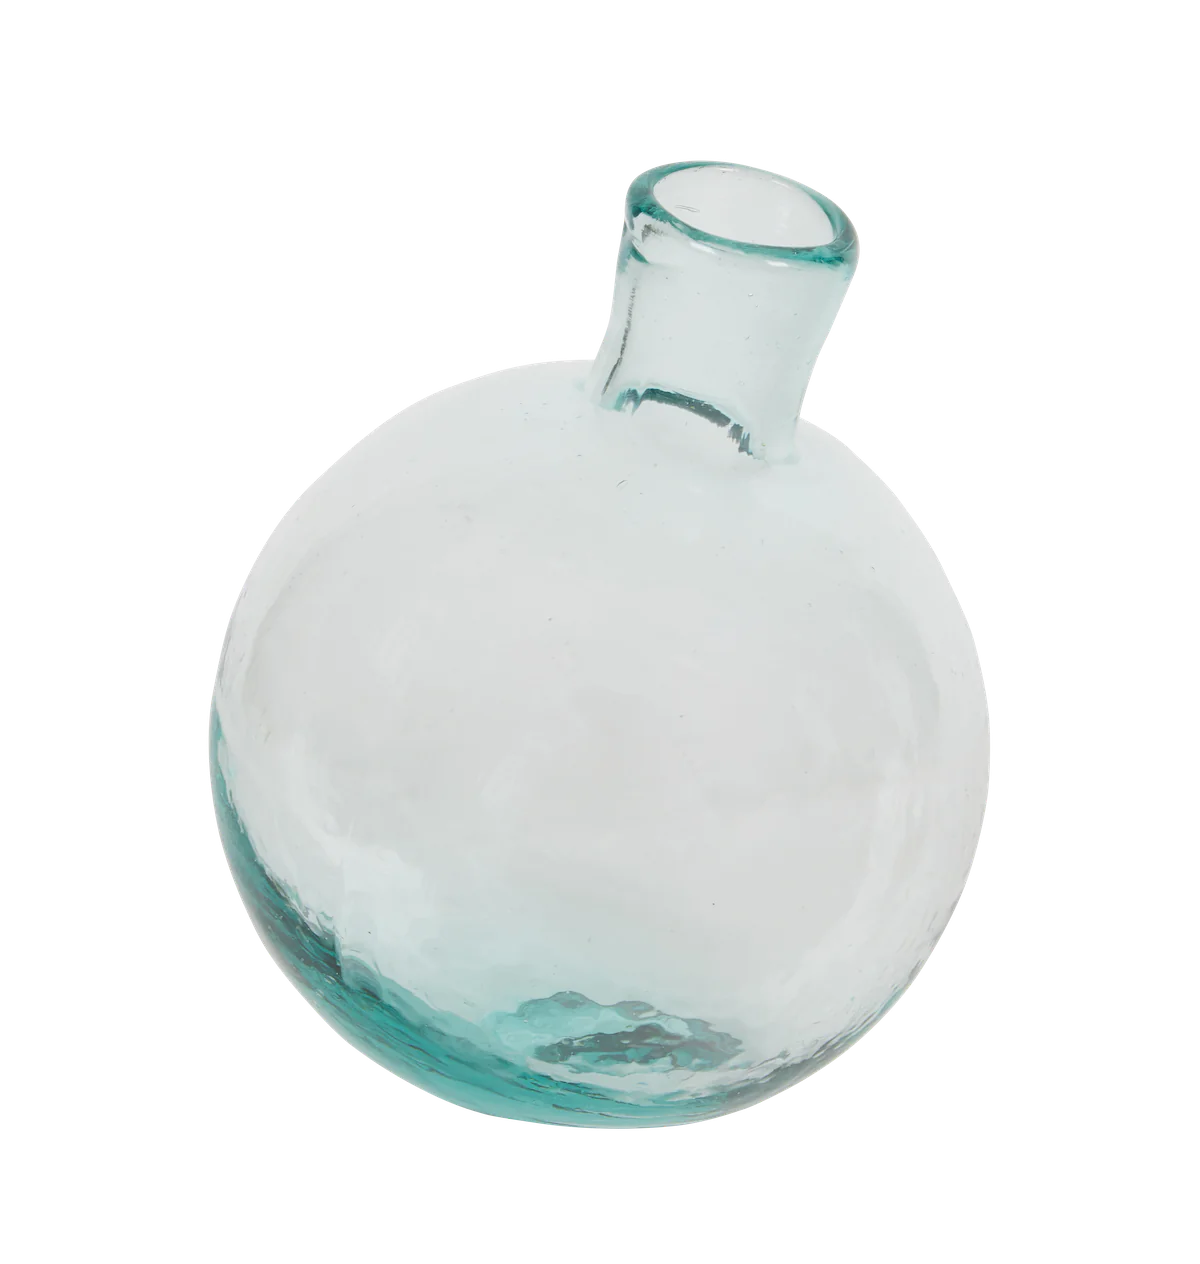 Sphere Bud Vase